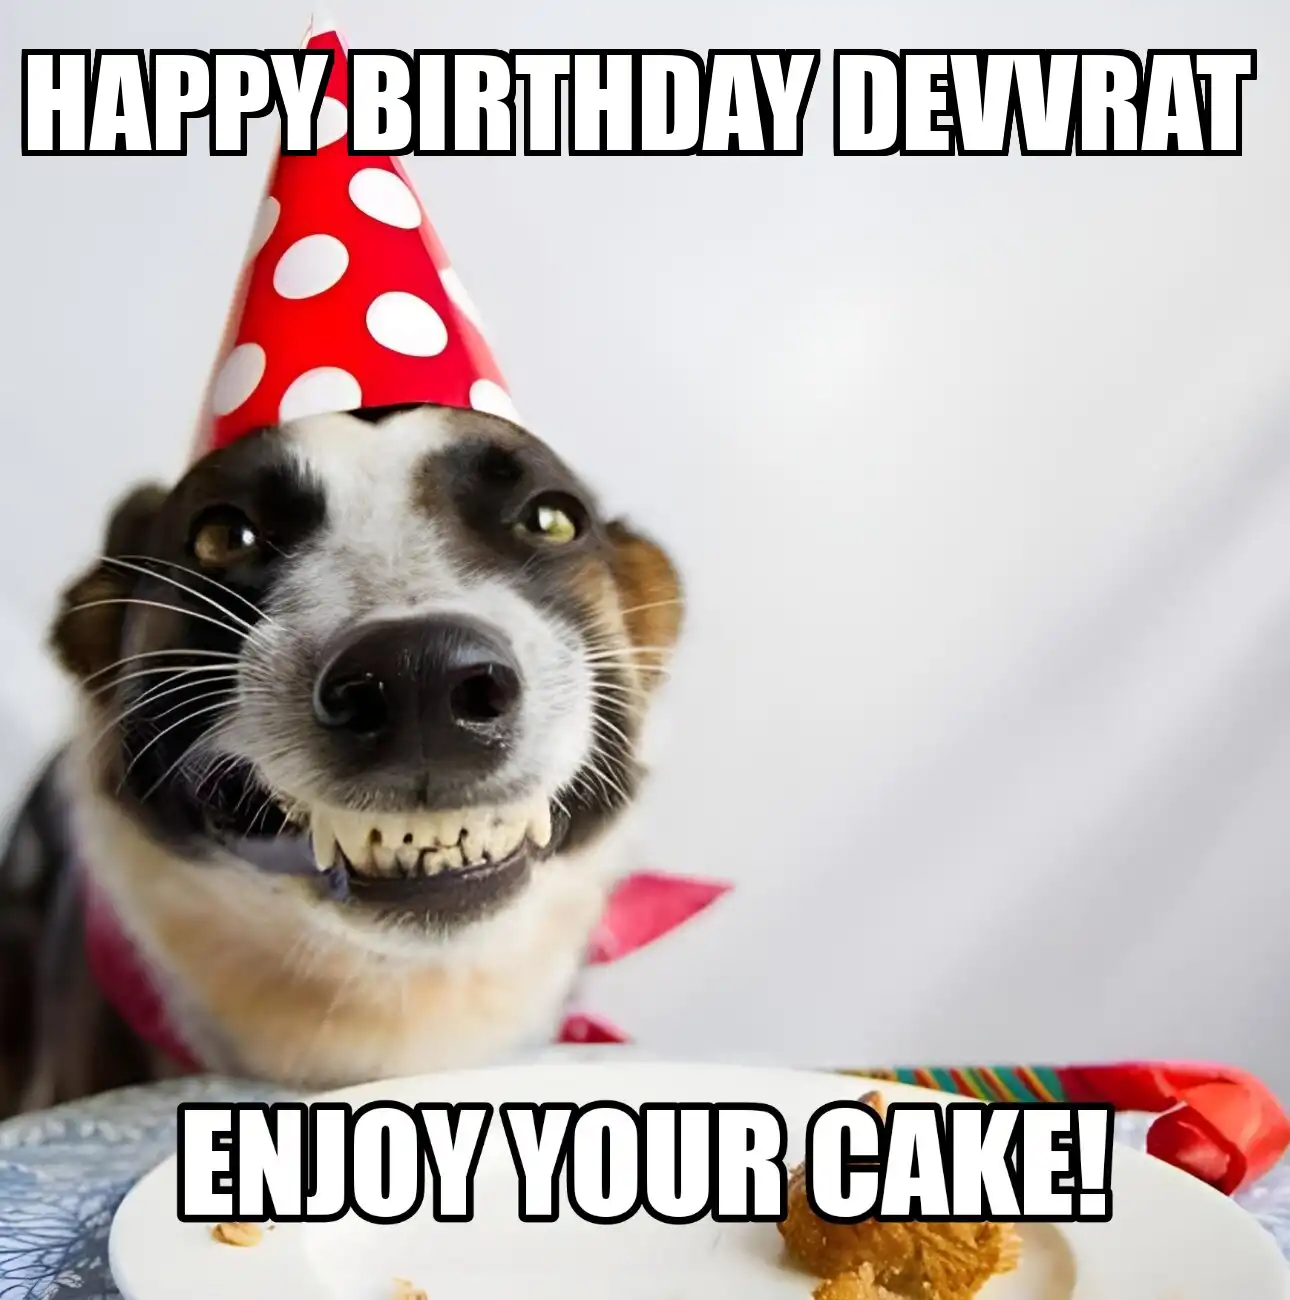 Happy Birthday Devvrat Enjoy Your Cake Dog Meme